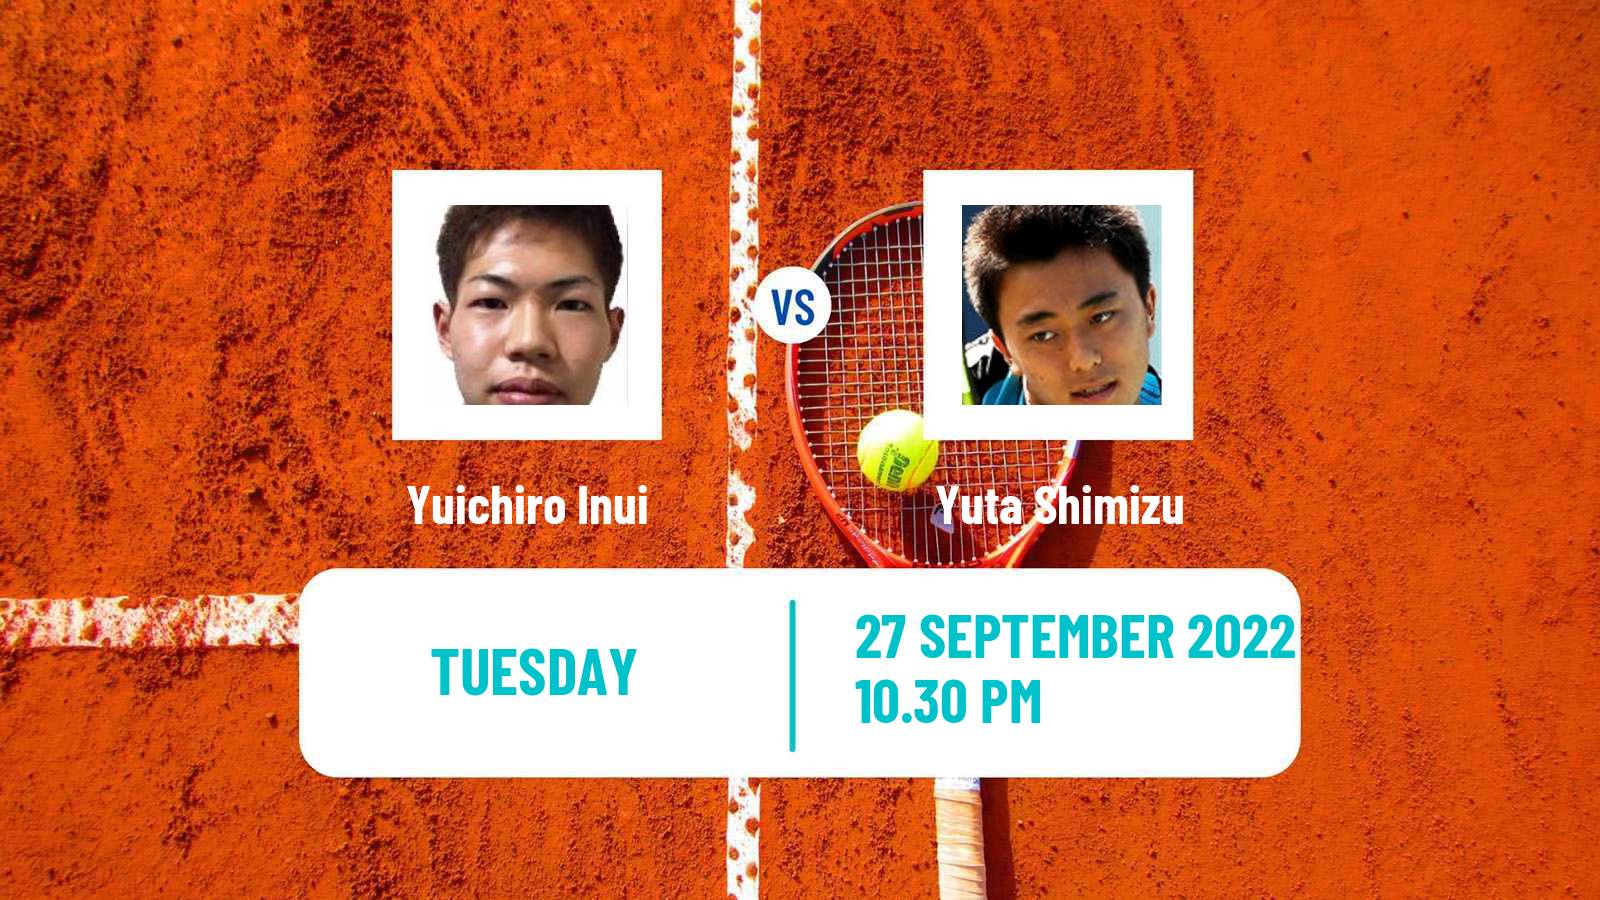 Tennis ITF Tournaments Yuichiro Inui - Yuta Shimizu